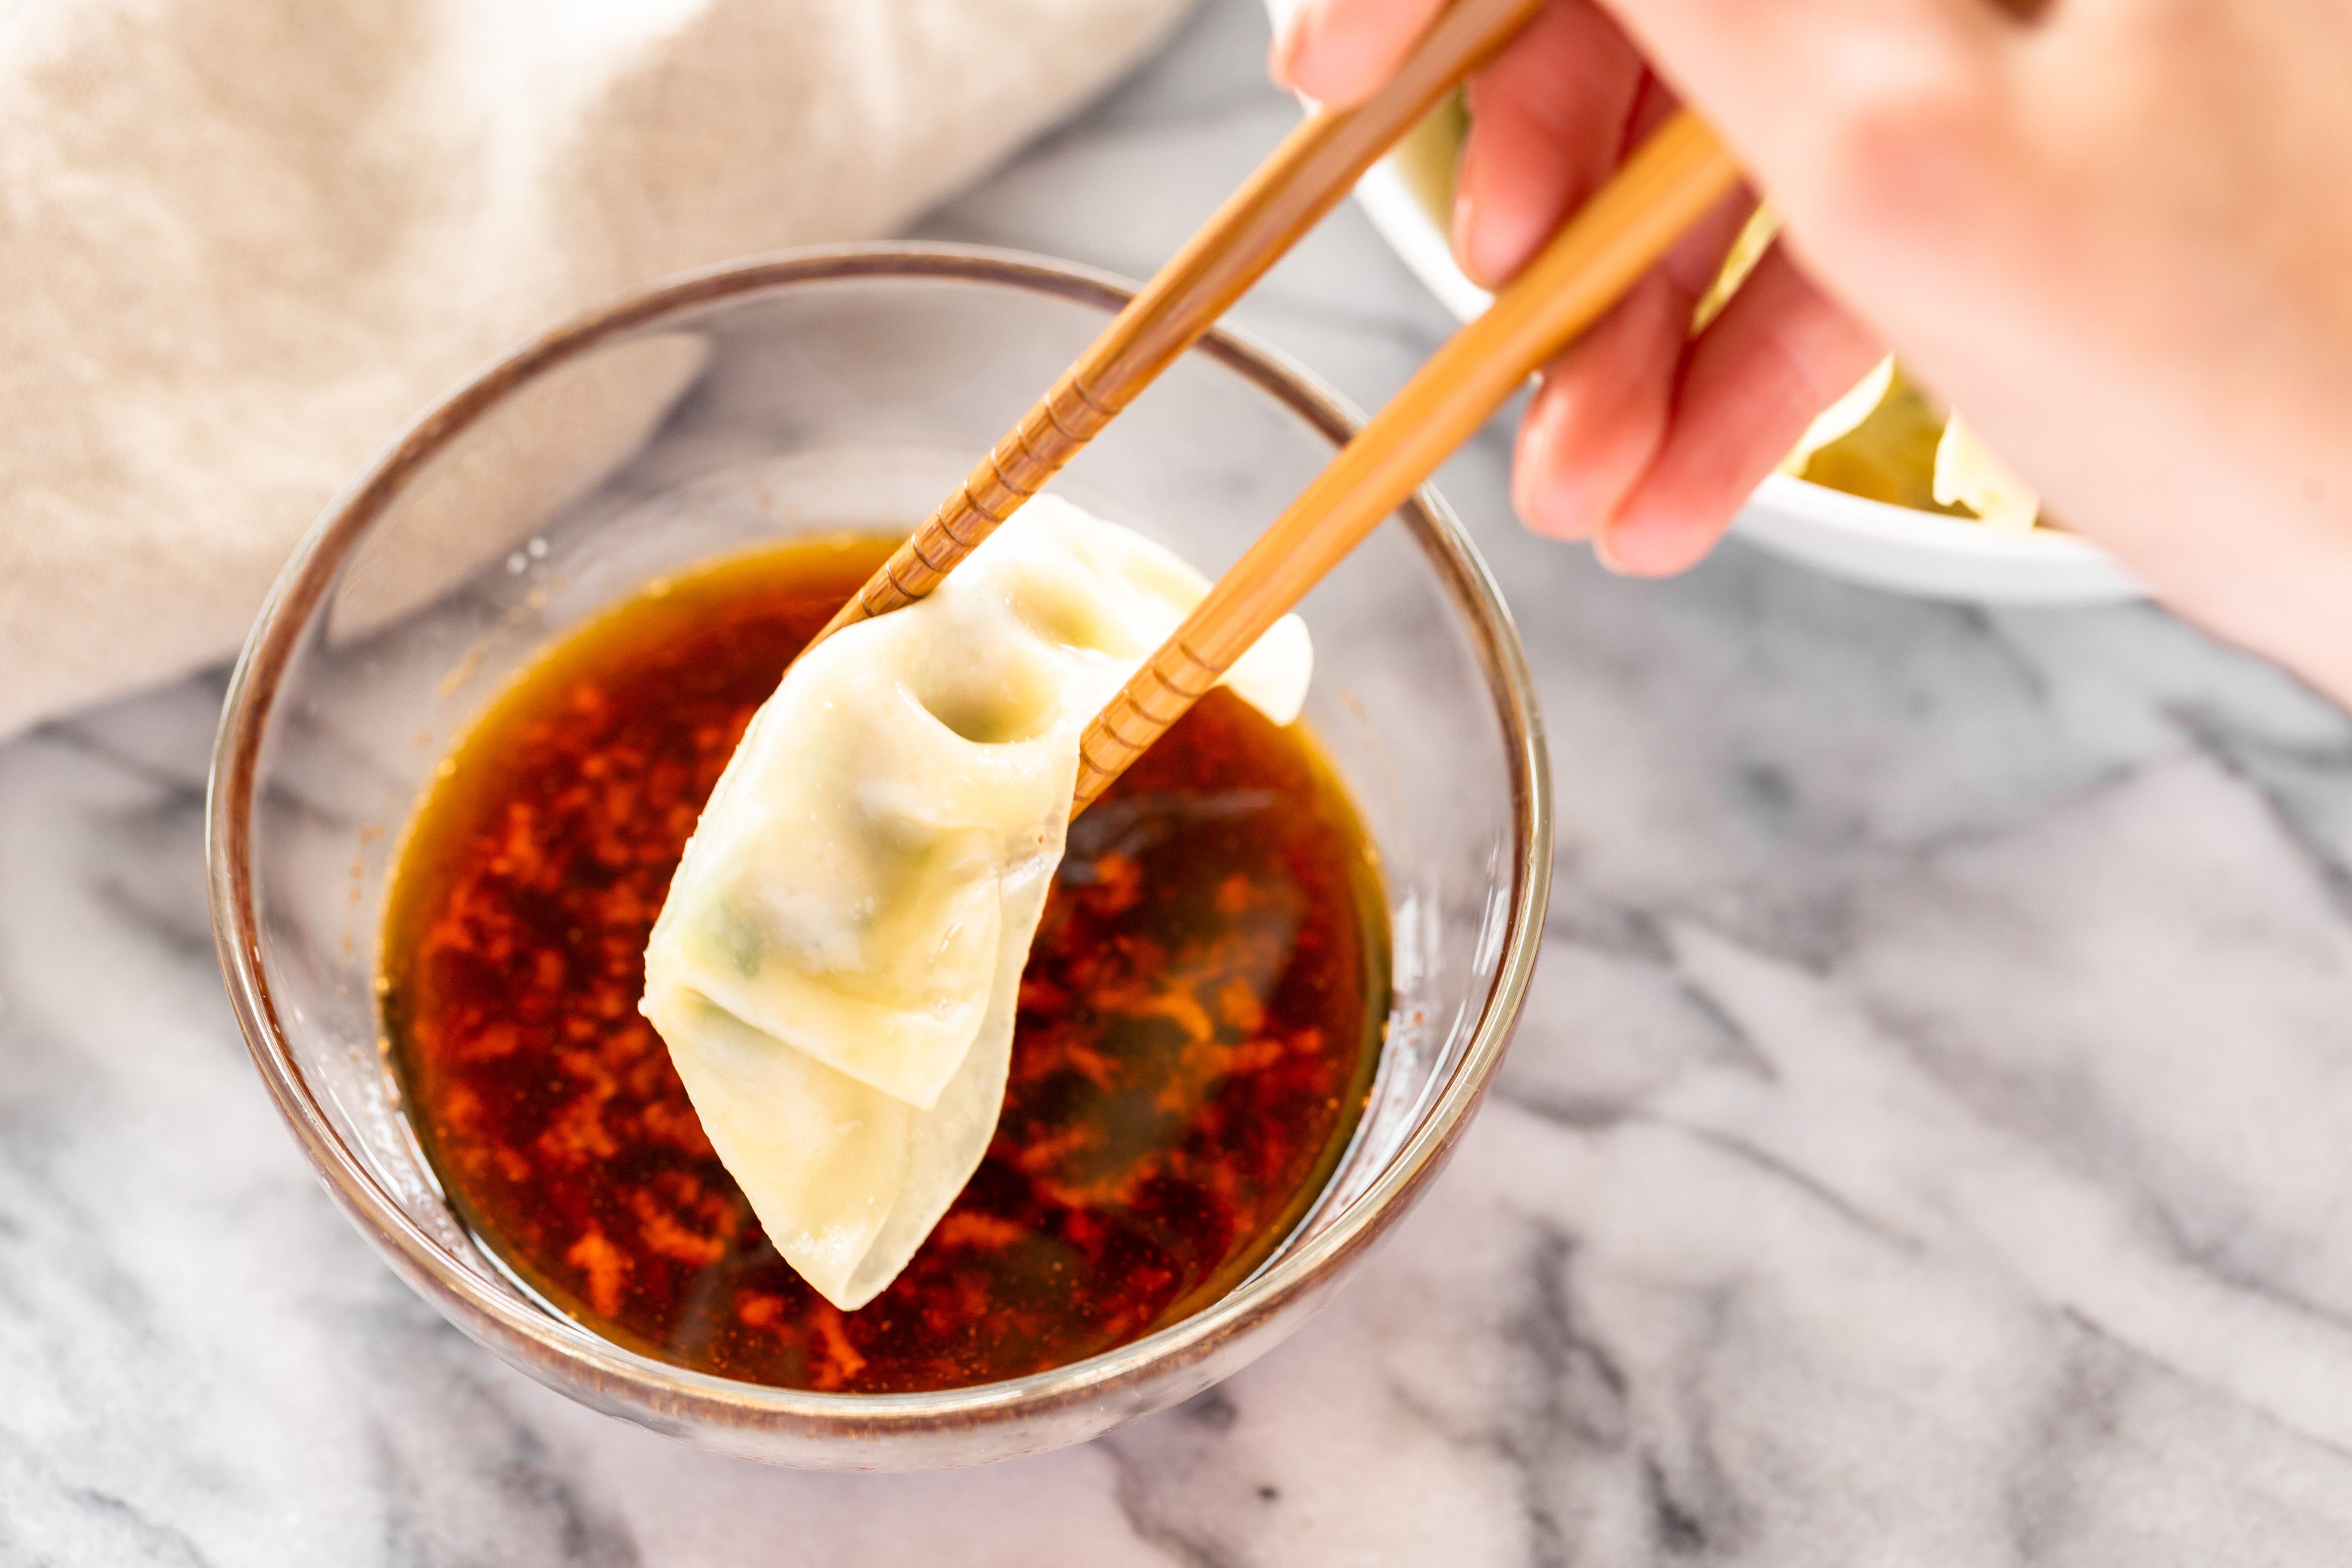 Asian dumpling dipping sauce